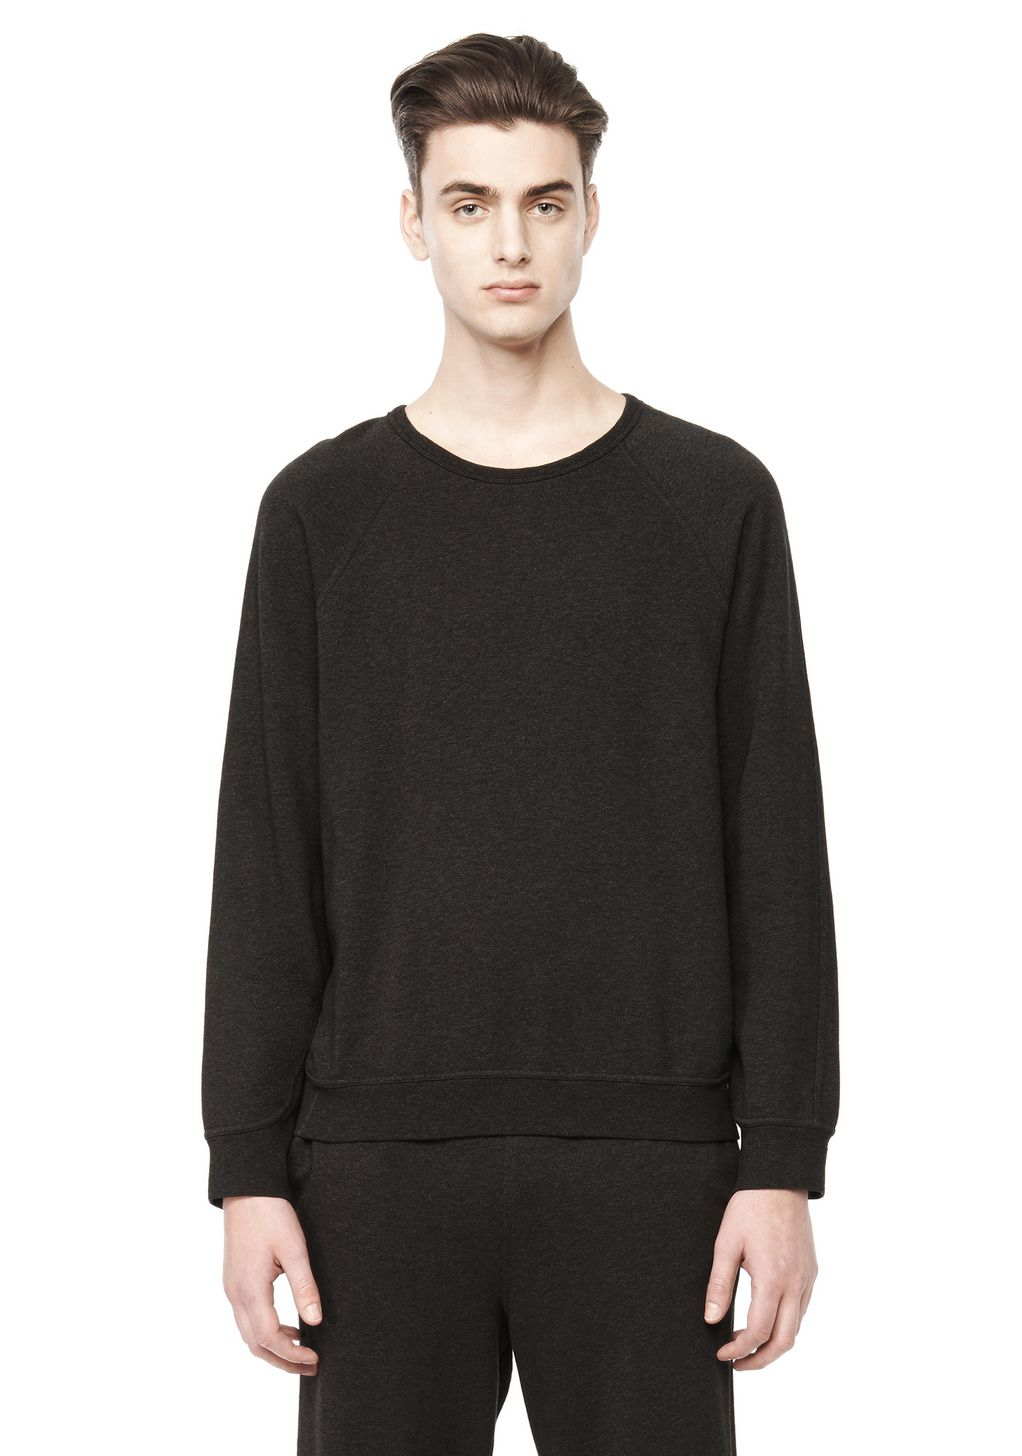 Lyst - Alexander Wang Crewneck Sweatshirt in Gray for Men